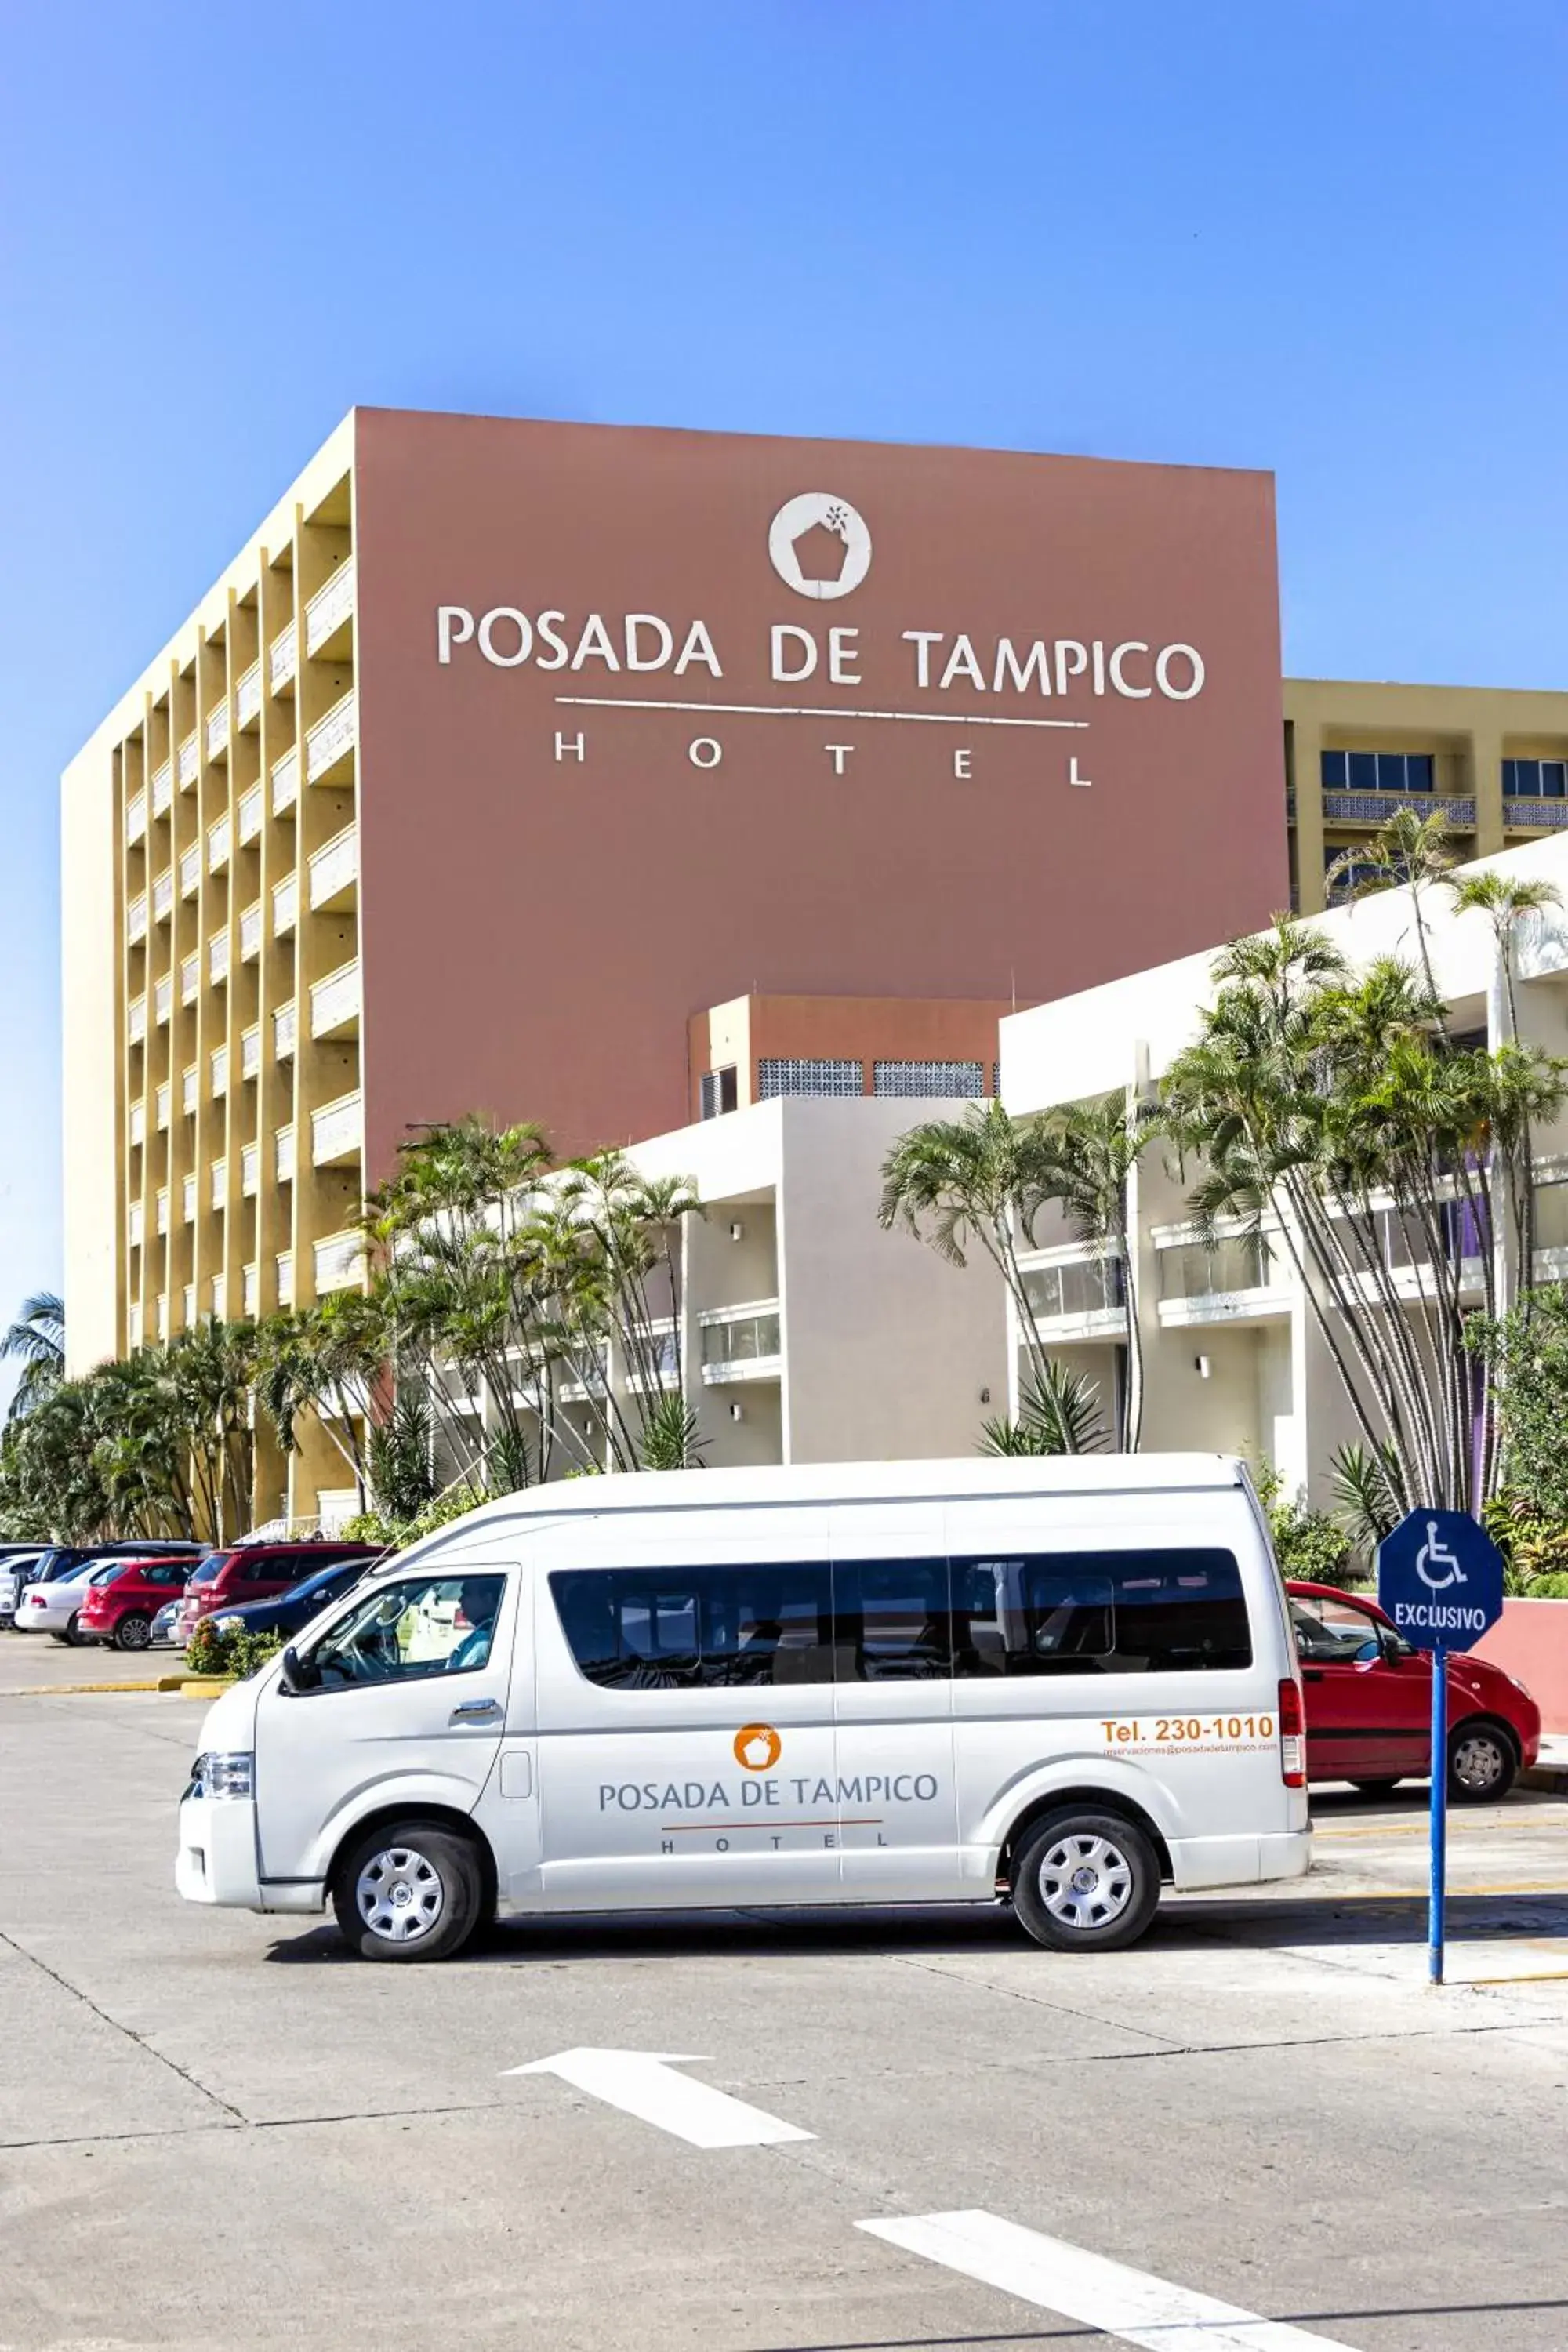 Property building in Posada de Tampico